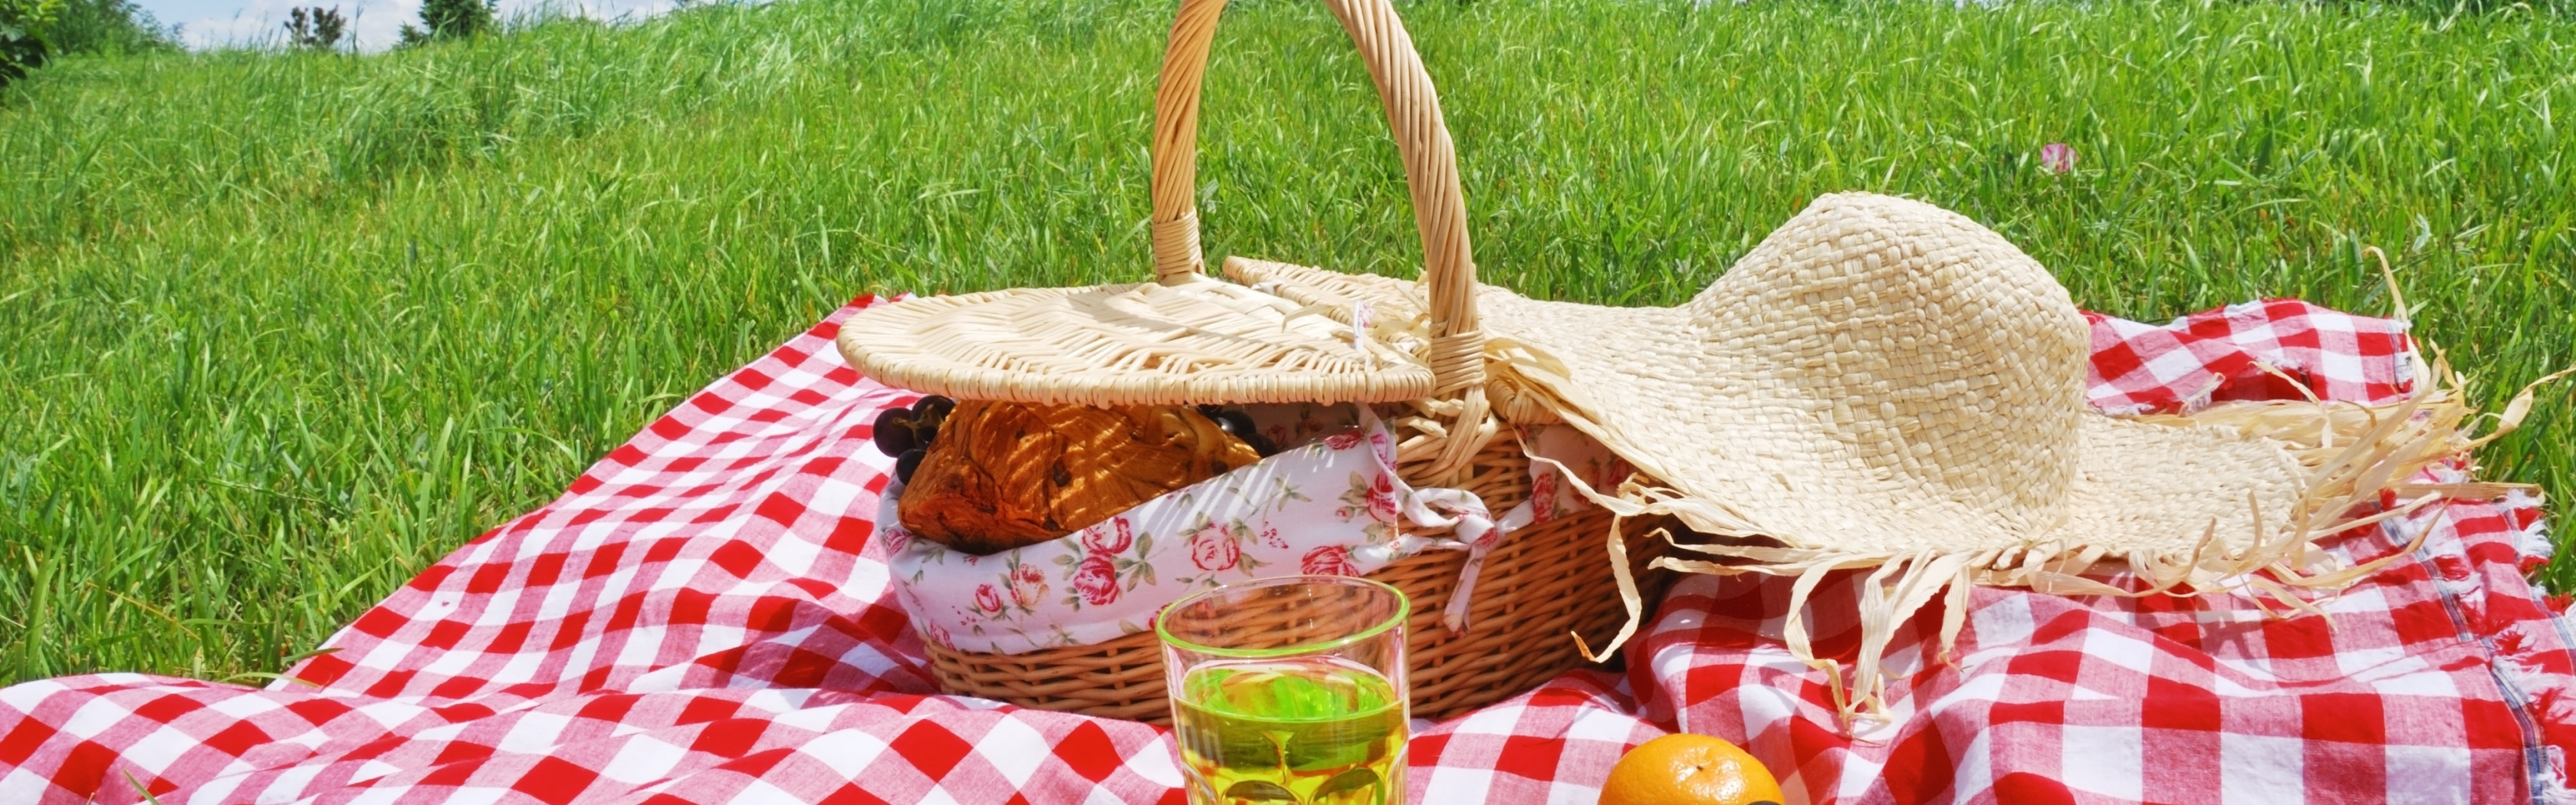 Пикник с фруктами. Майские праздники пикник. Пасхальный пикник. Корзинка для пикника на траве. Пикник едет